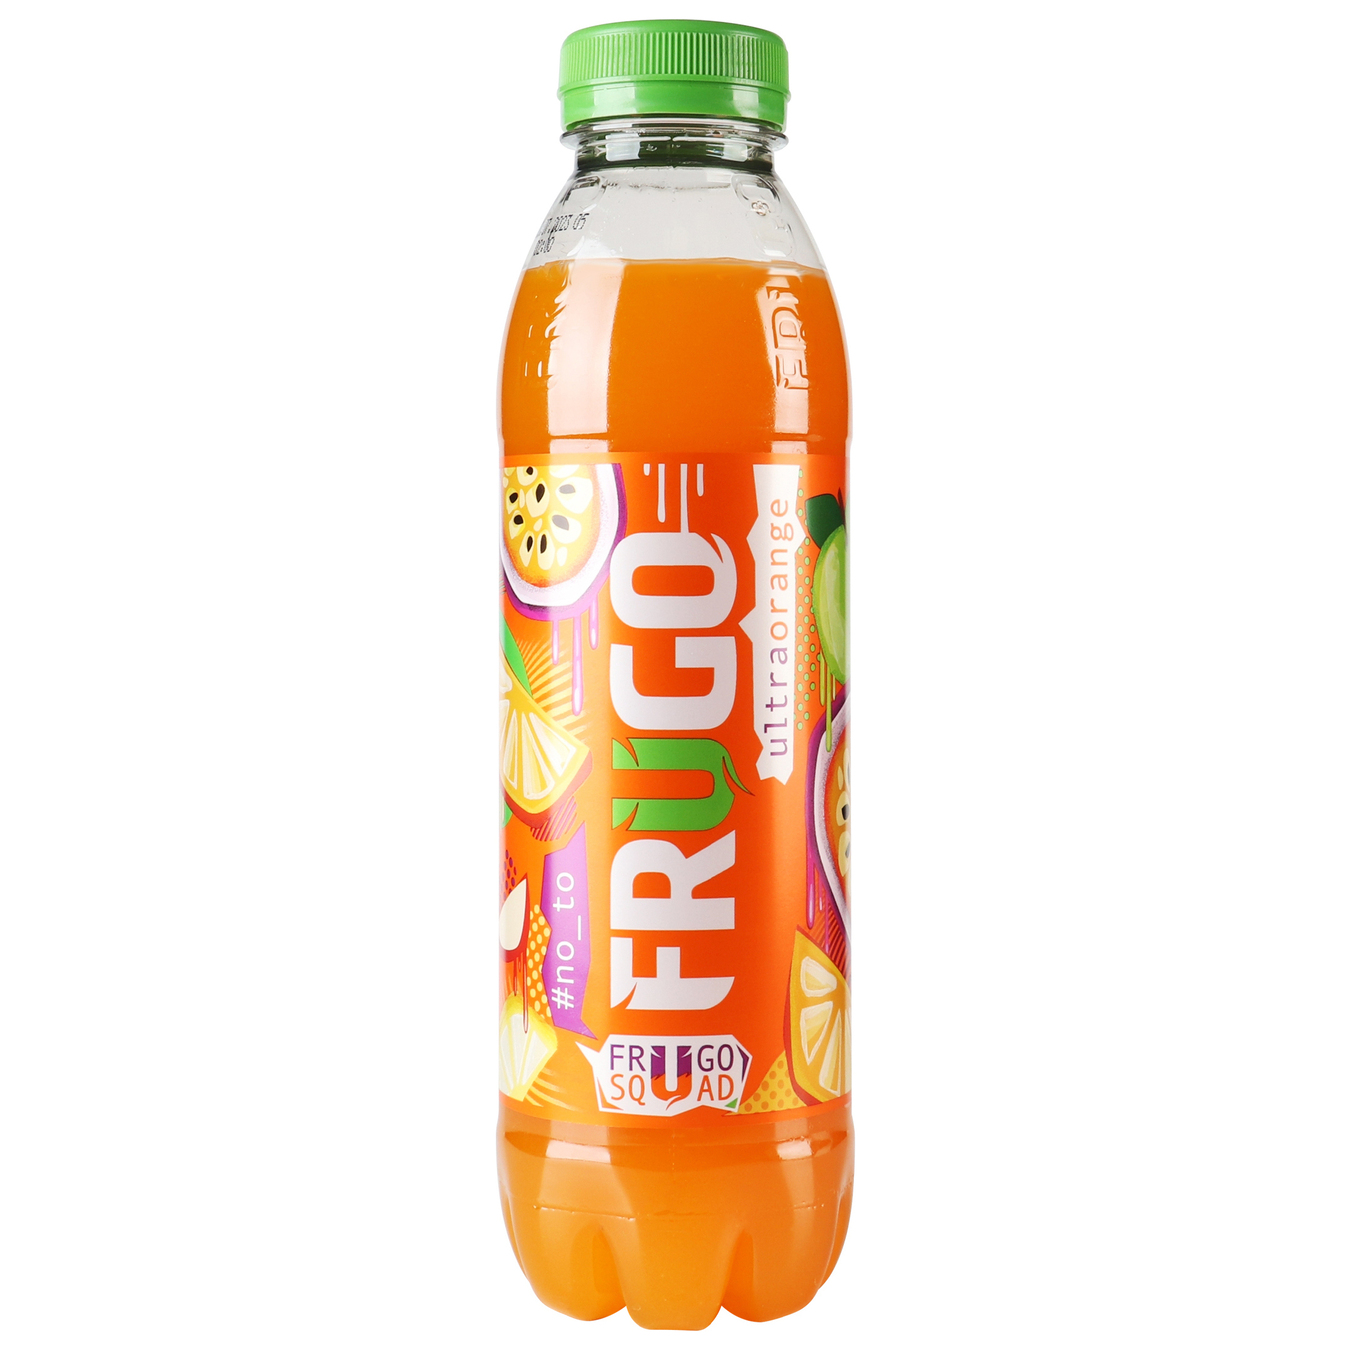 Juice drink Frugo orange 0.5 l